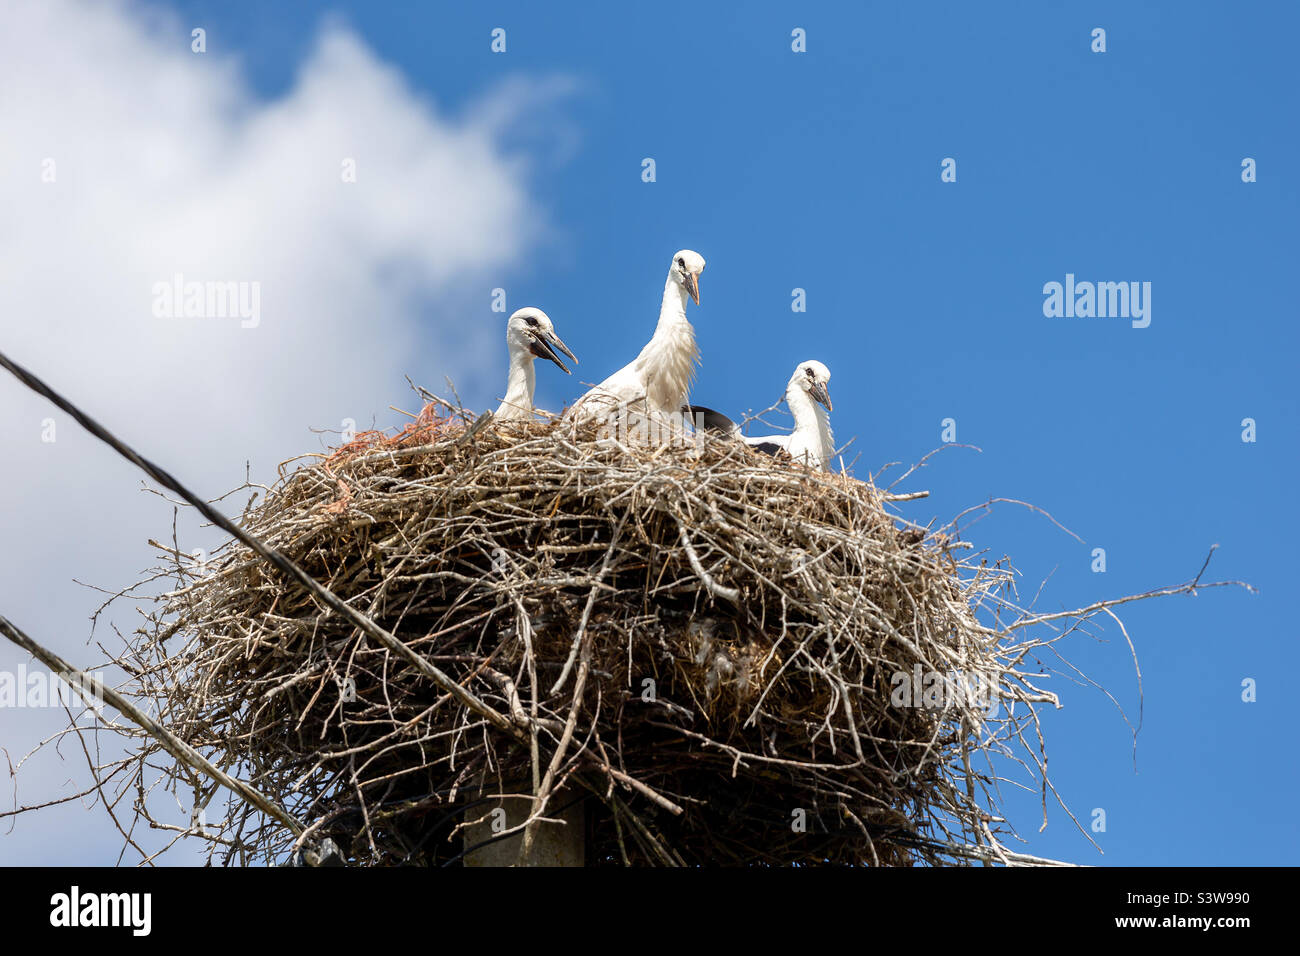 Family of storks in the nest in spring Stock Photo